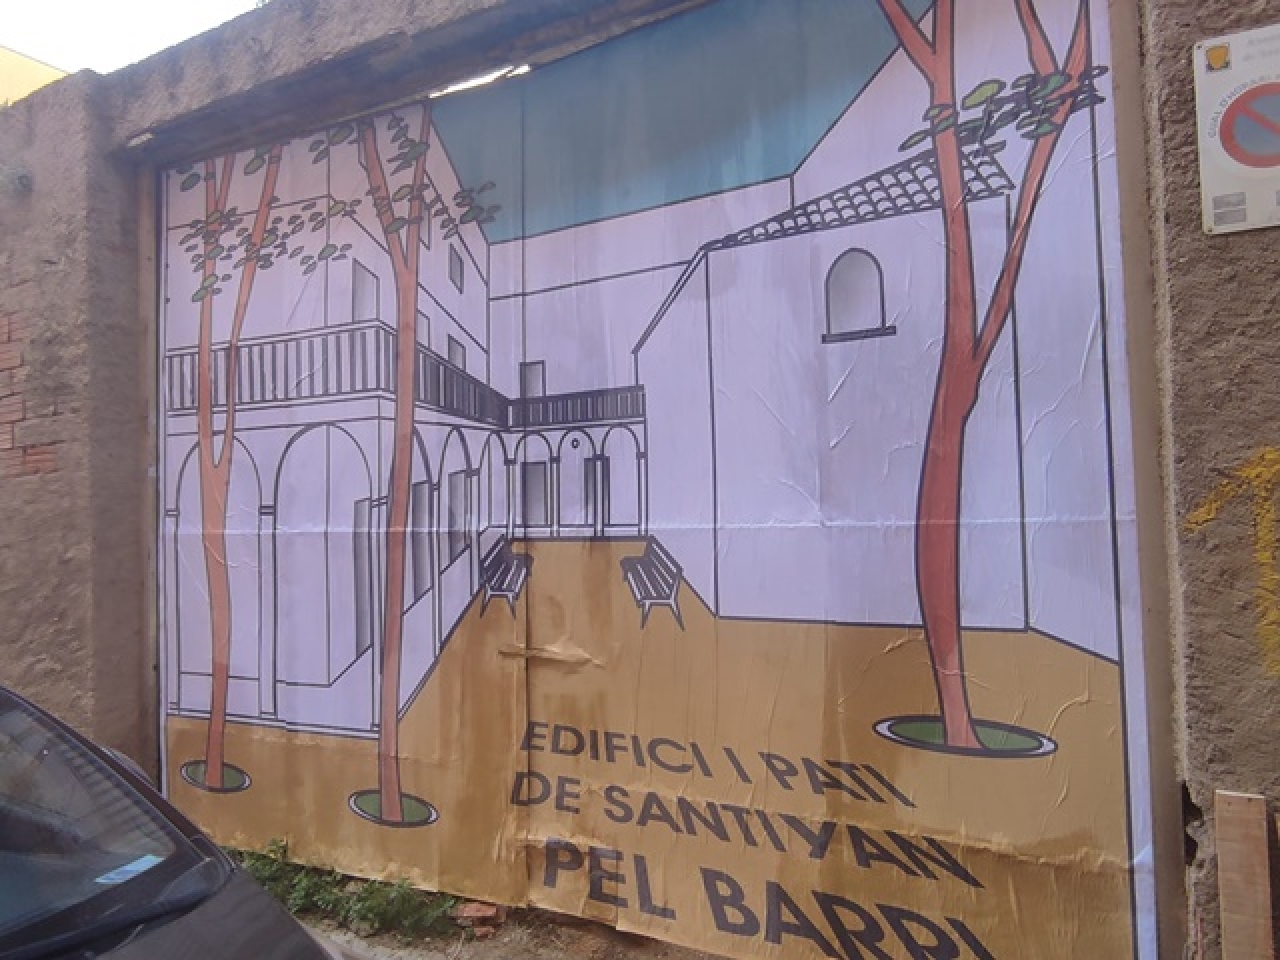 Imatge d&#039;arxiu d&#039;un mural reivindicatiu pintat l&#039;any passat a les portes del pati del carrer Santiyán 